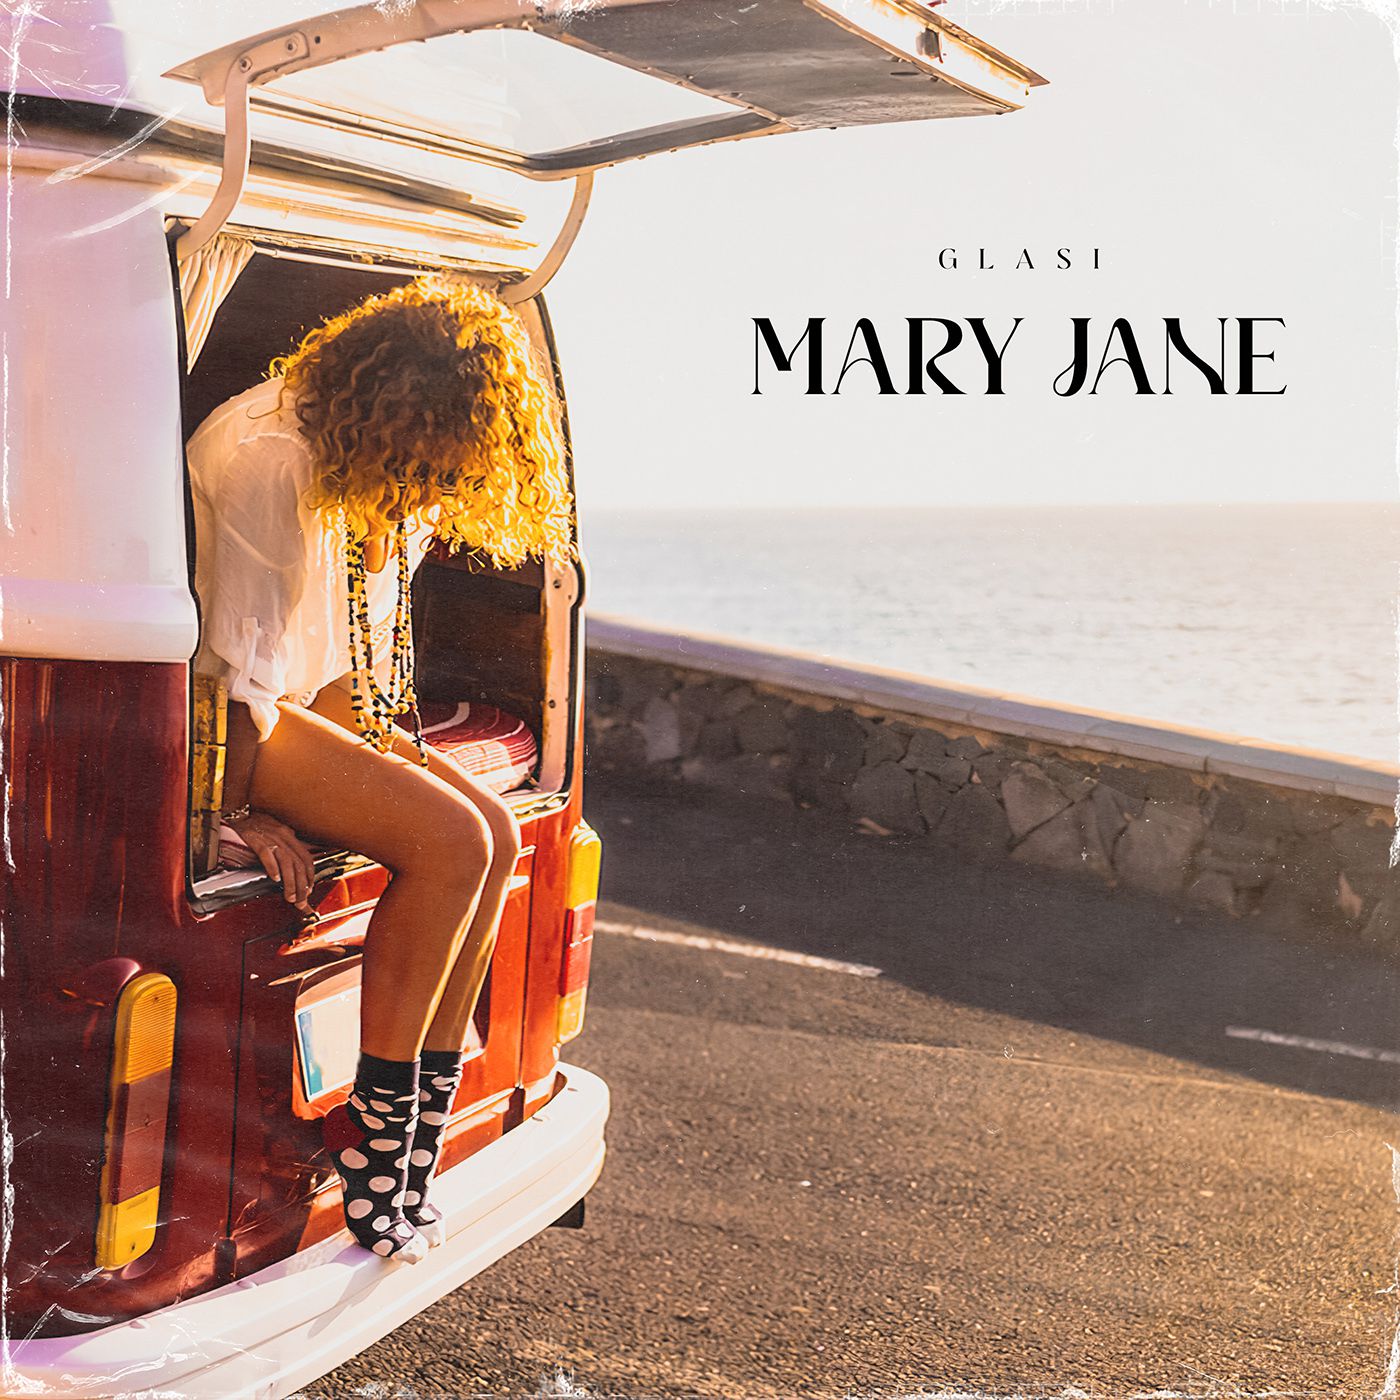 Glasi „Mary Jane“ – dance ‘n‘ dream!